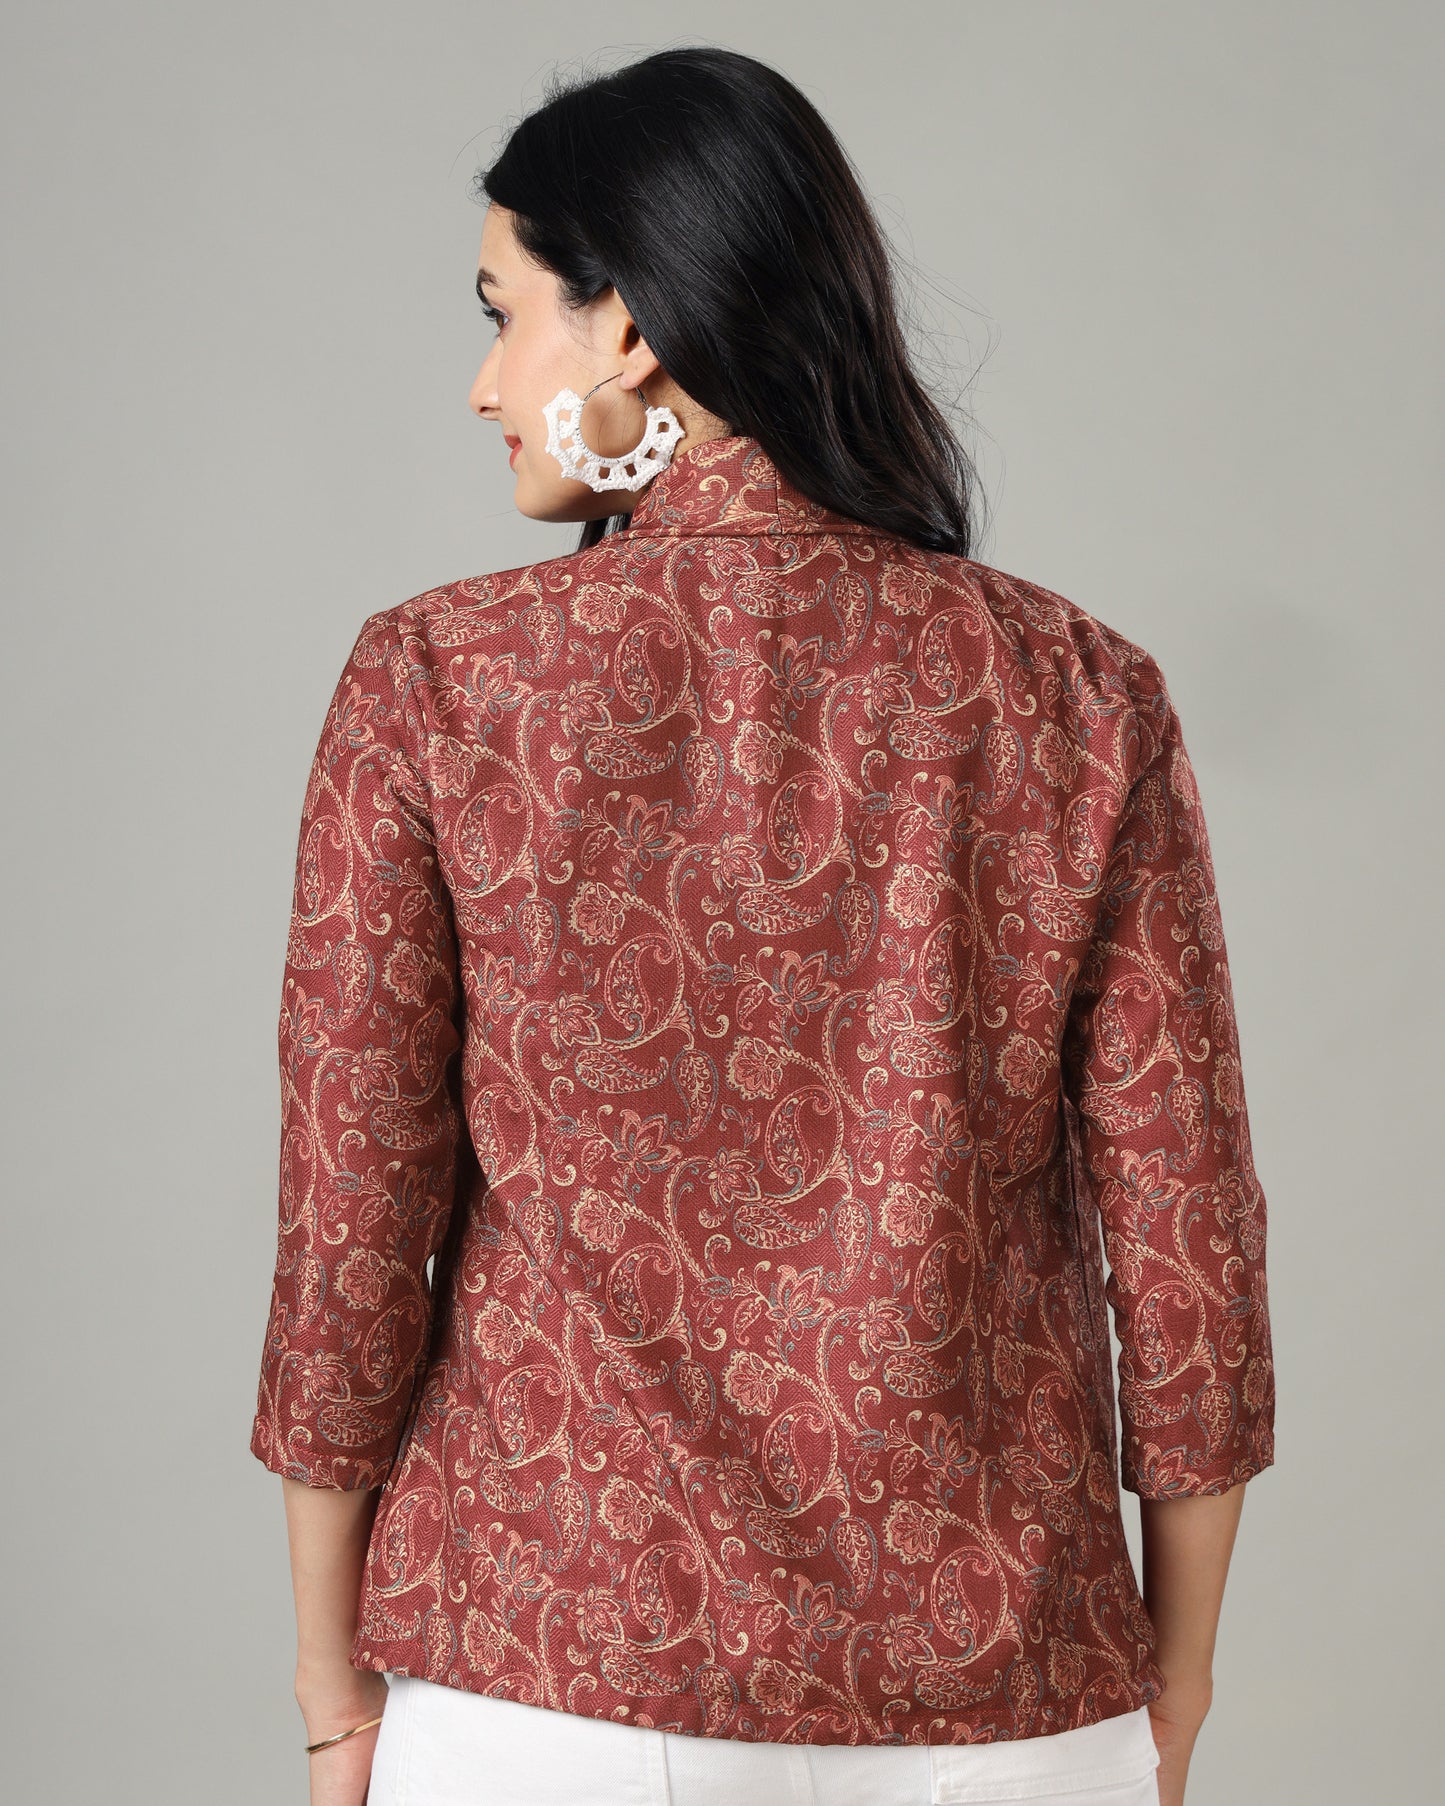 Durable and Stylish Women's Pashmina Jacket